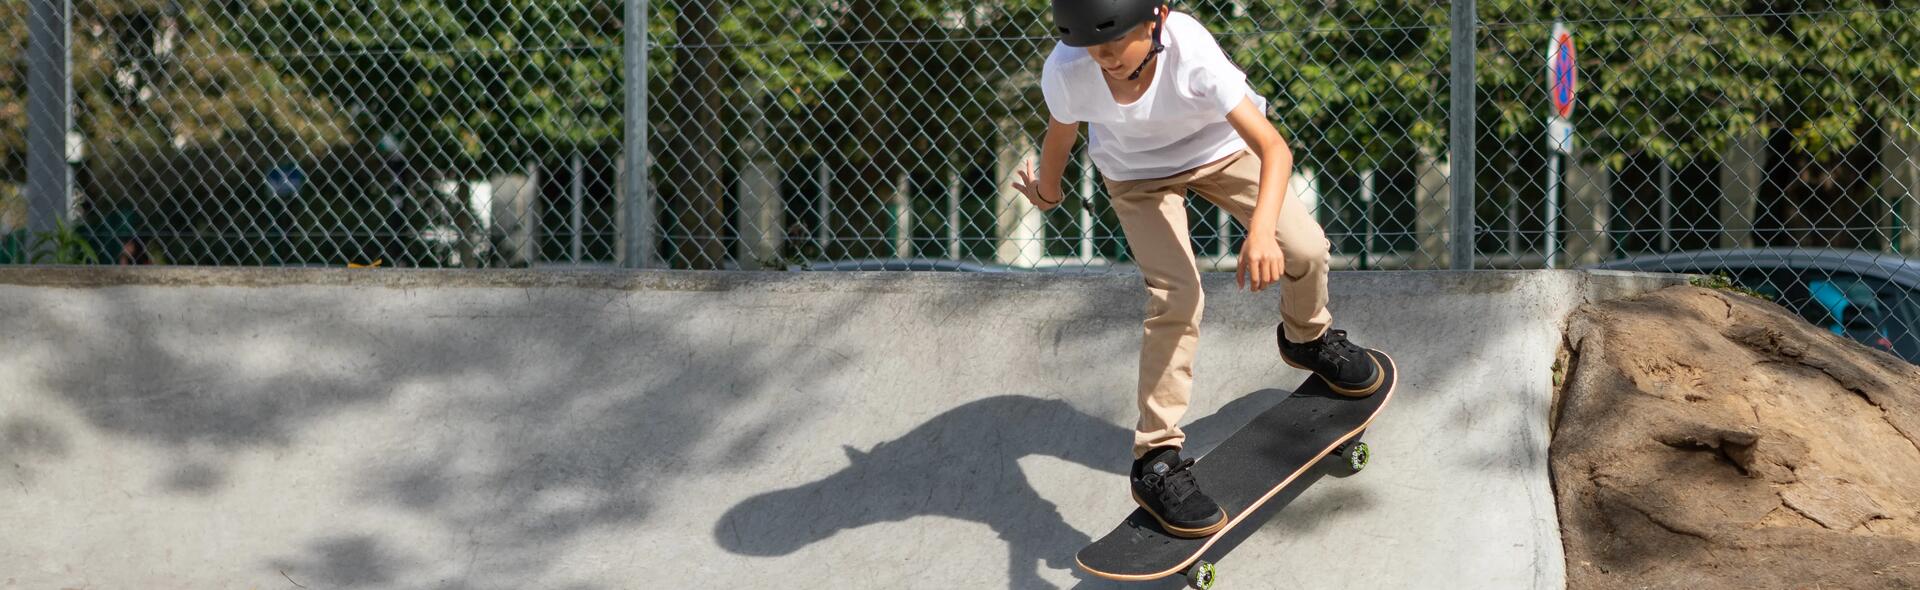  Skate, longboard e cruiser skate: escolhe o teu preferido!